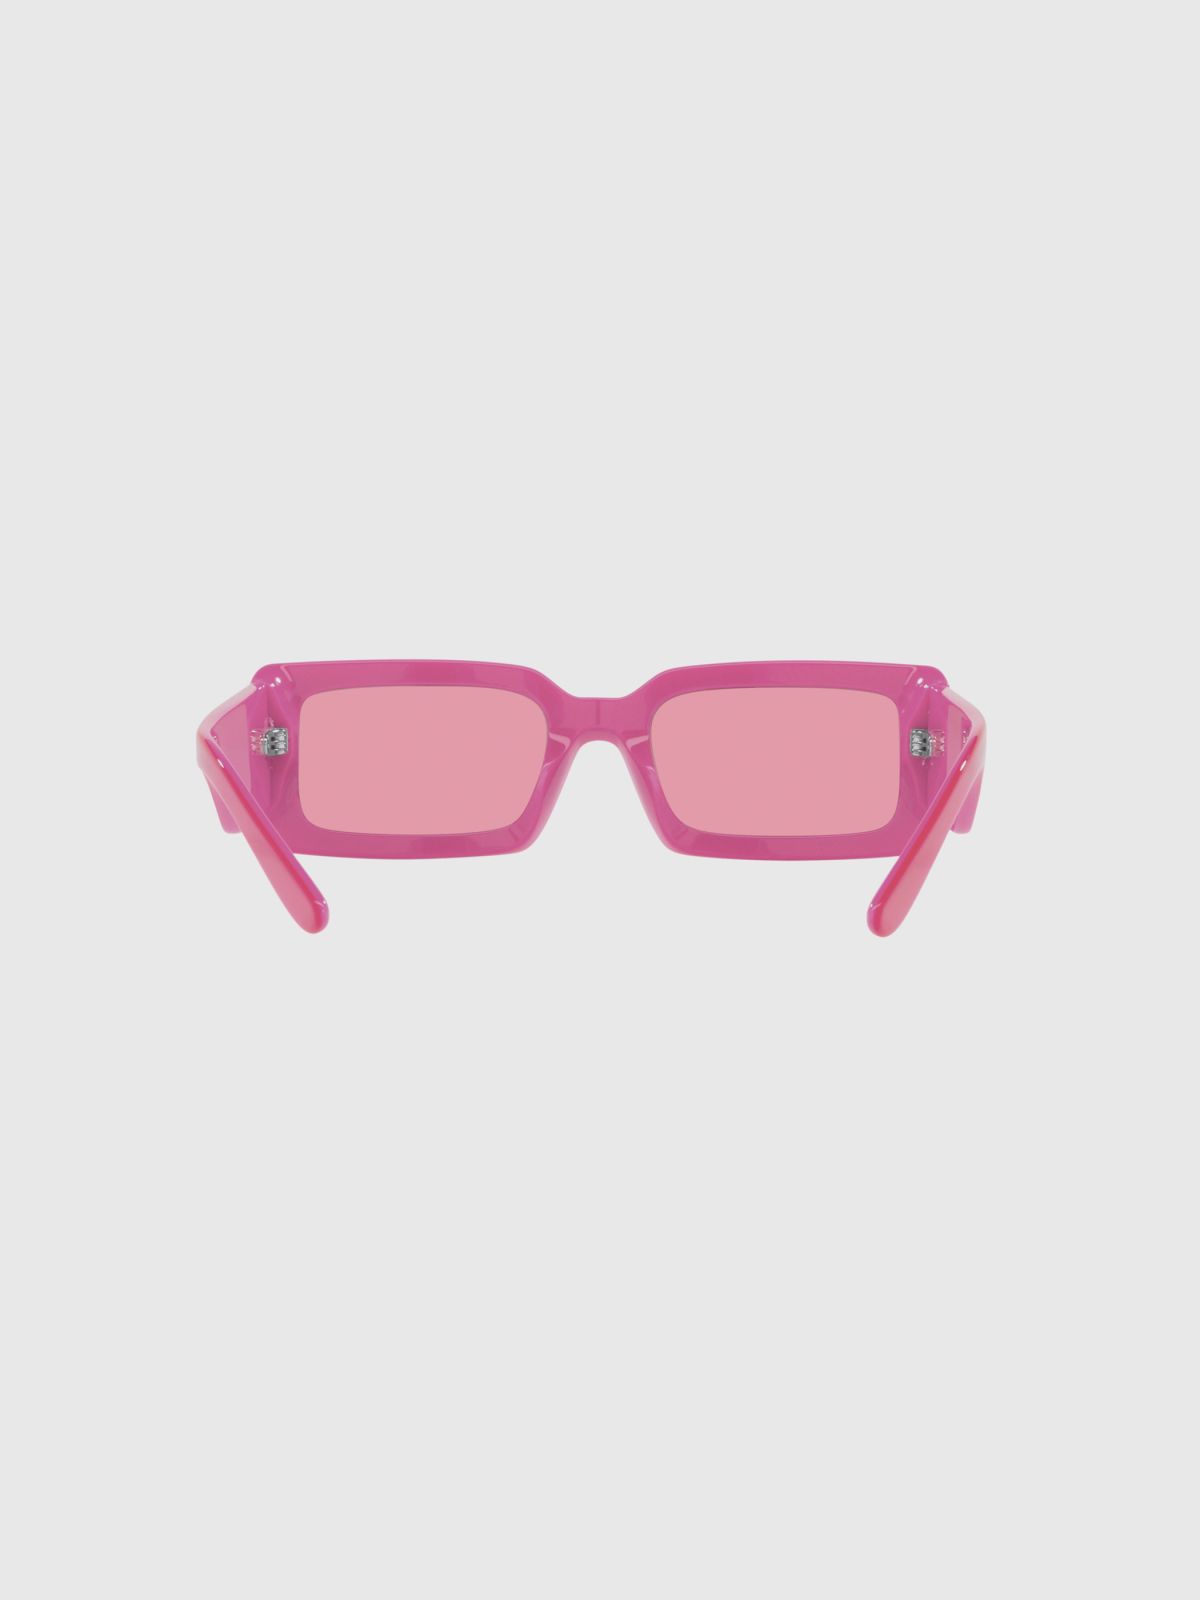  משקפי שמש עם מסגרת עבה / נשים של D&G